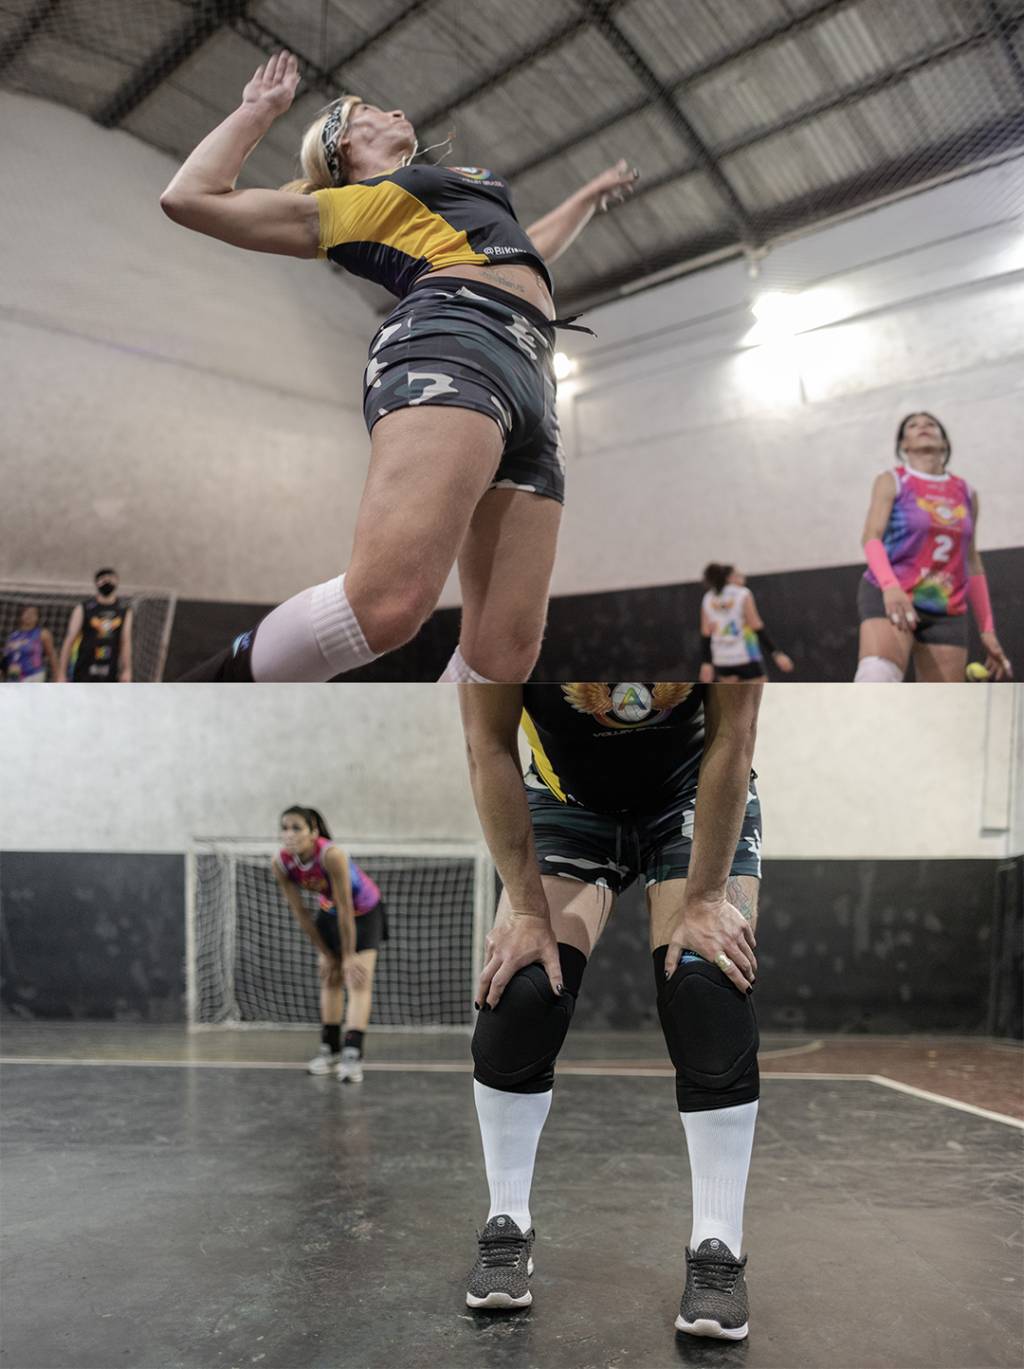 Aline corta bola contra o time adversário. Ela fez um teste para entrar no time Angels Volley Brazil e foi encaixada na turma de mulheres com prática em vôlei avançada.